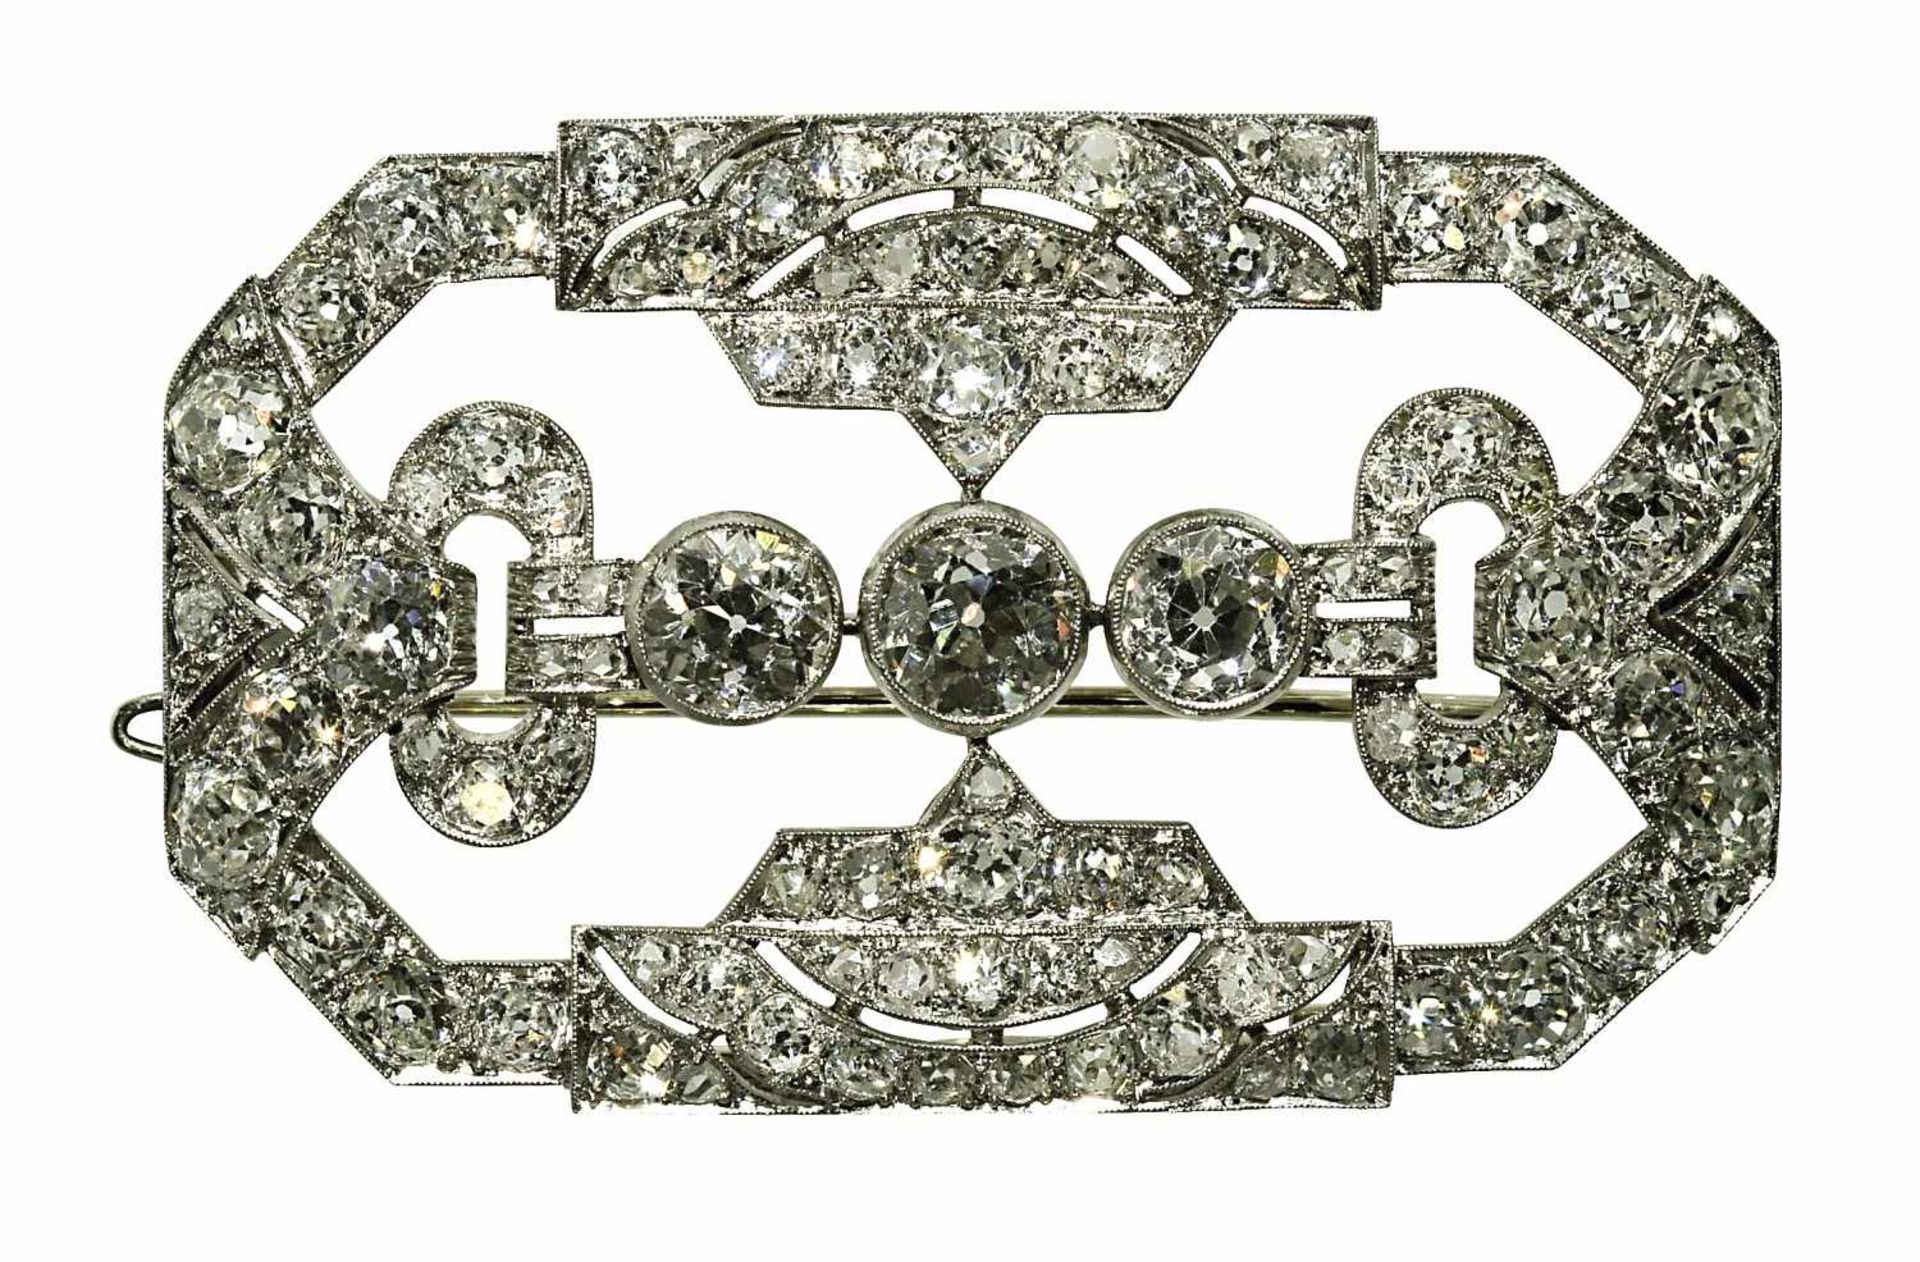 Diamantbrosche Um 1910 18 K WG, Marke (750, "HG", u.a.). Längliche, achteckige Form, vollständig